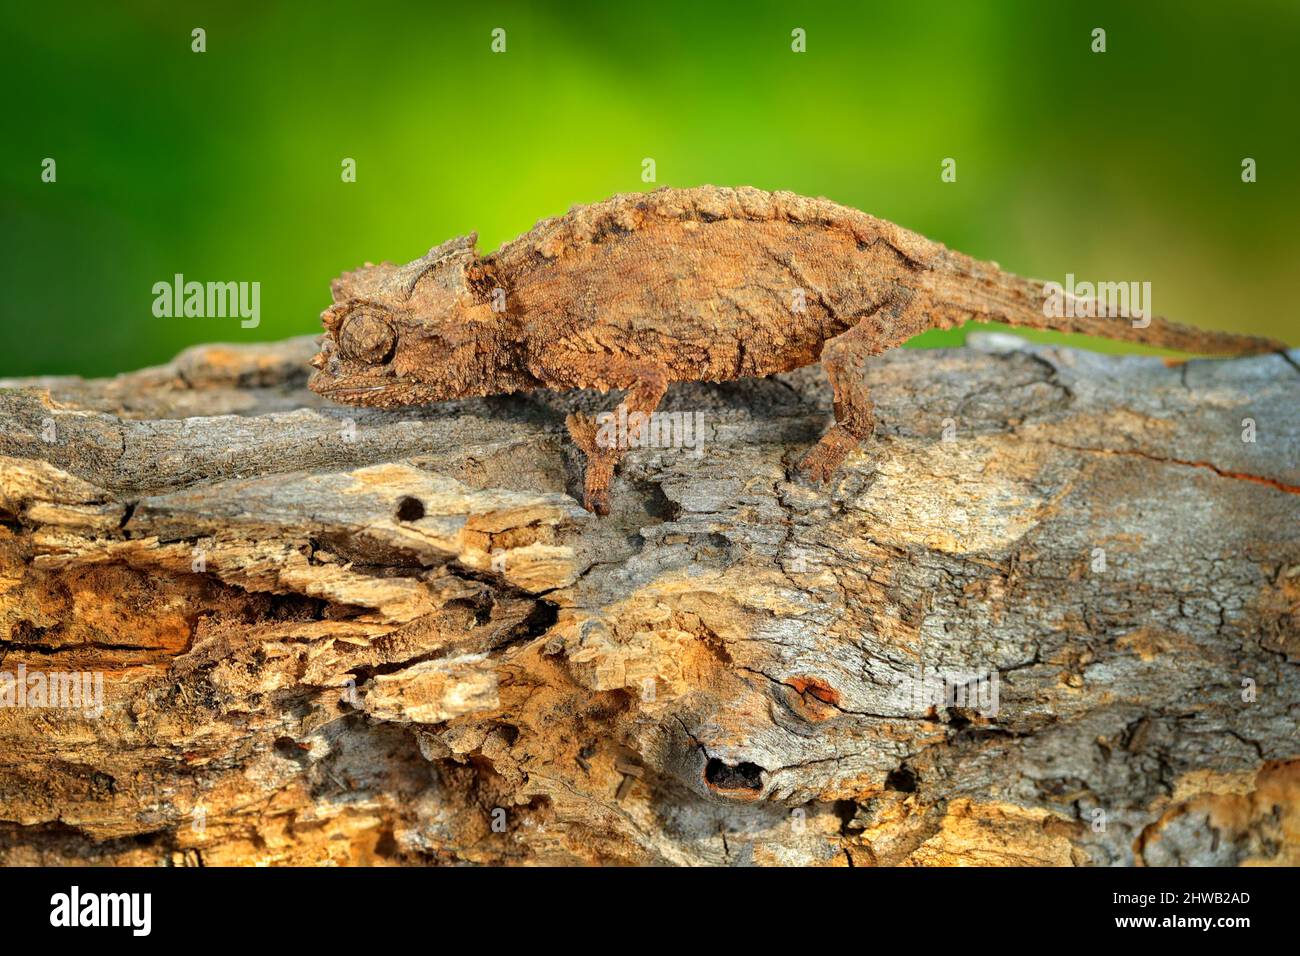 Brookesia ebenaui, Northern Leaf Chameleon am Ast sitzend in Waldhabitat. Exotisch schönes endemisches grünes Reptil mit langem Schwanz aus Madagaskar Stockfoto